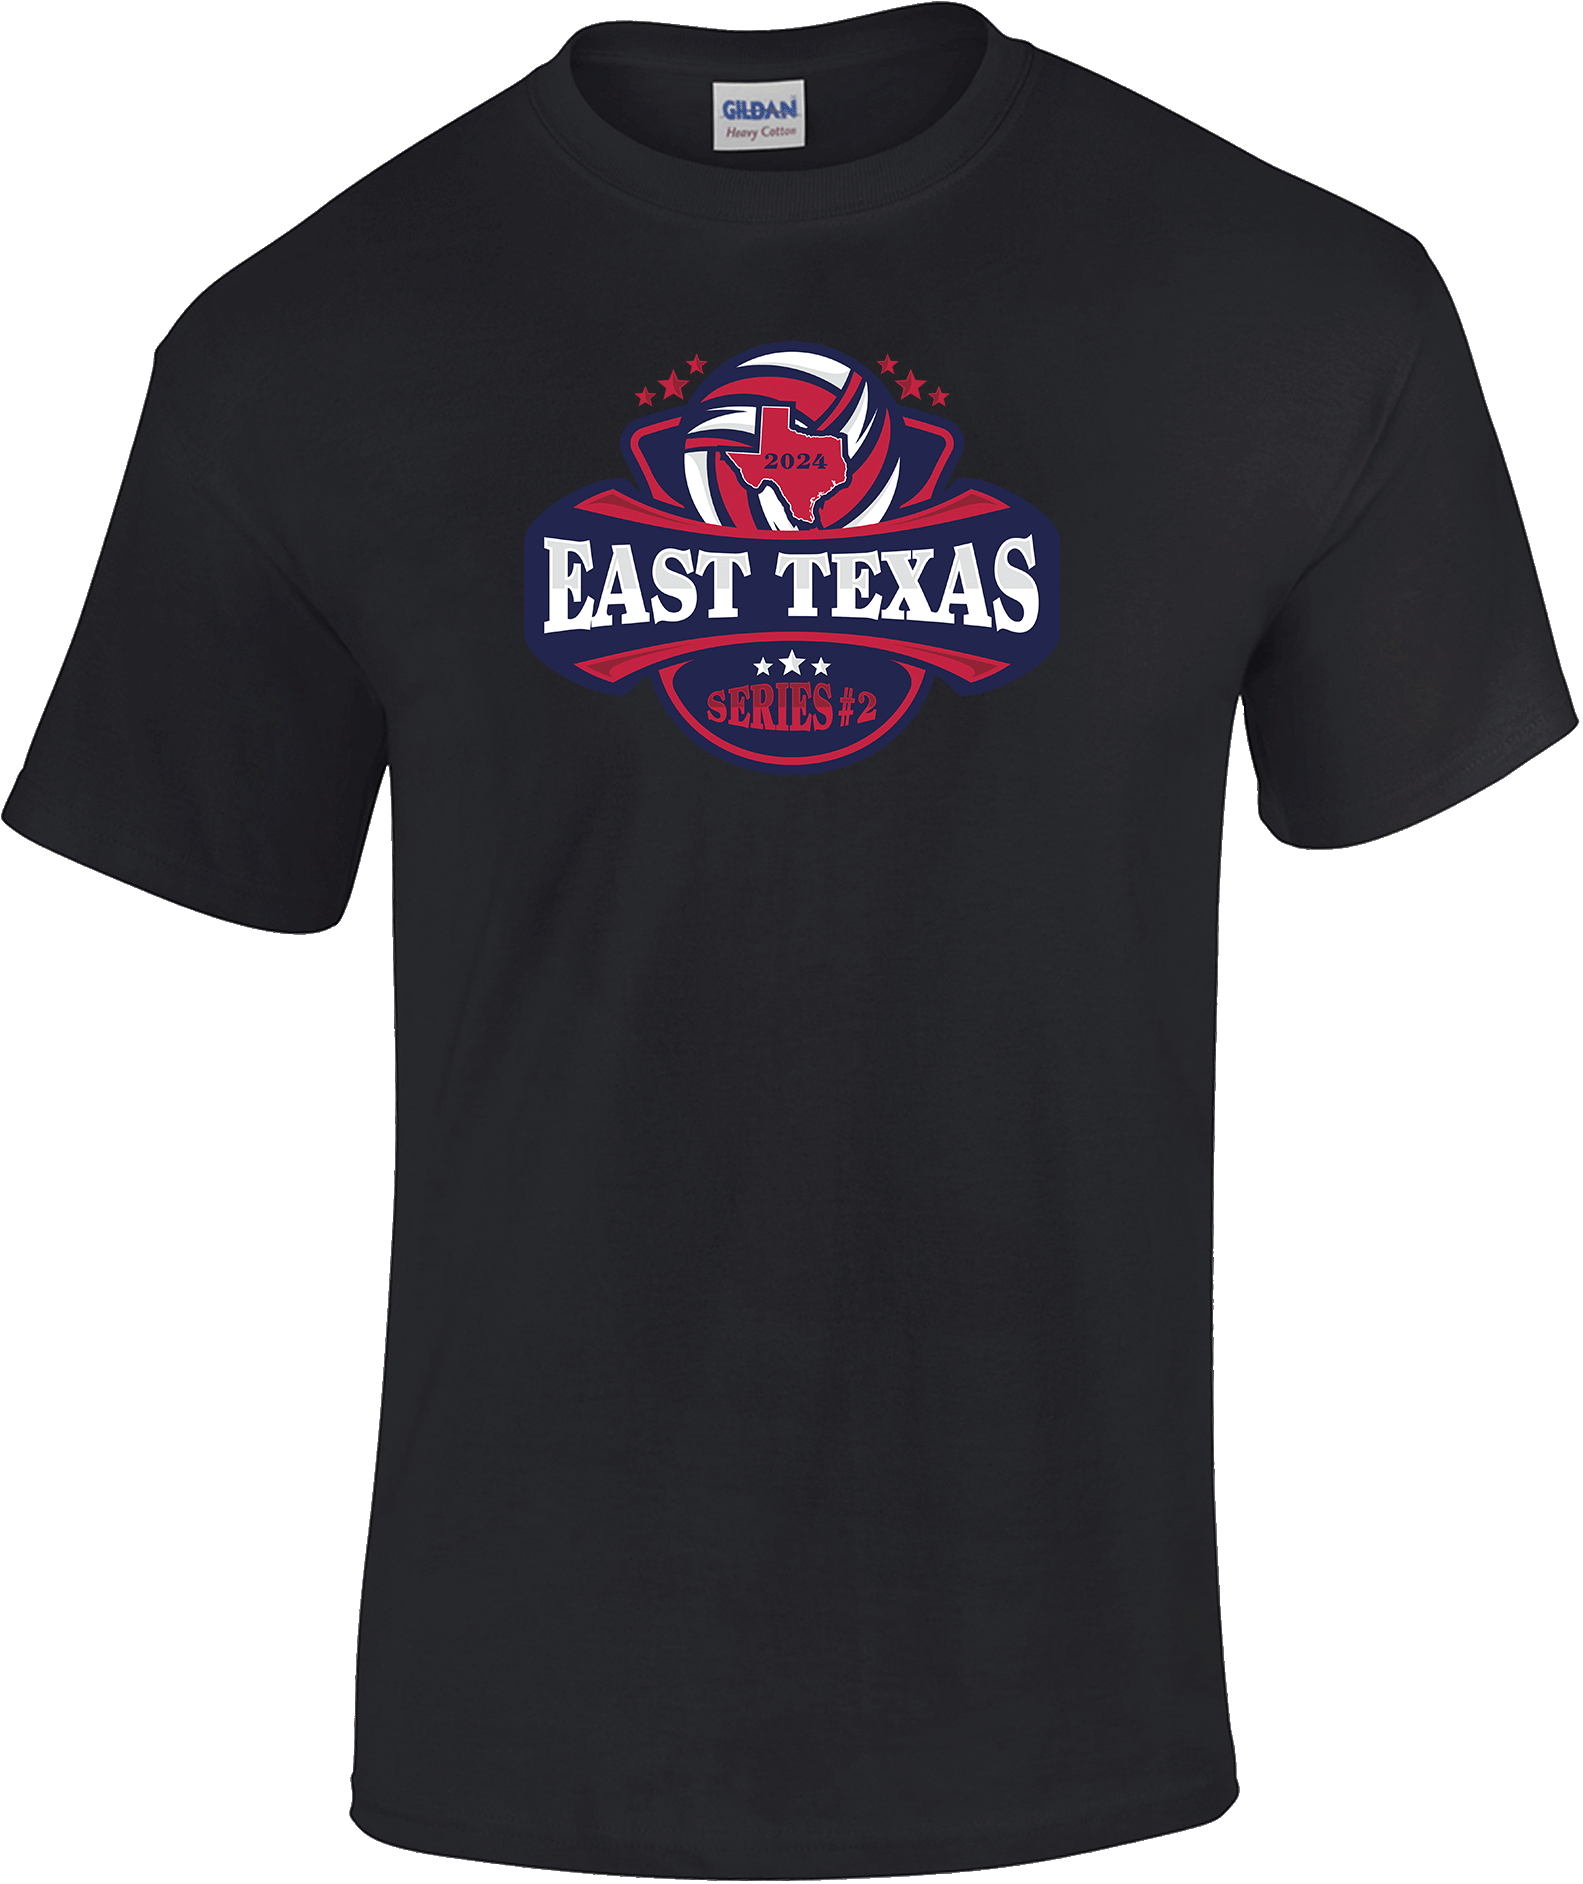 Short Sleeves - 2024 East Texas Series #2